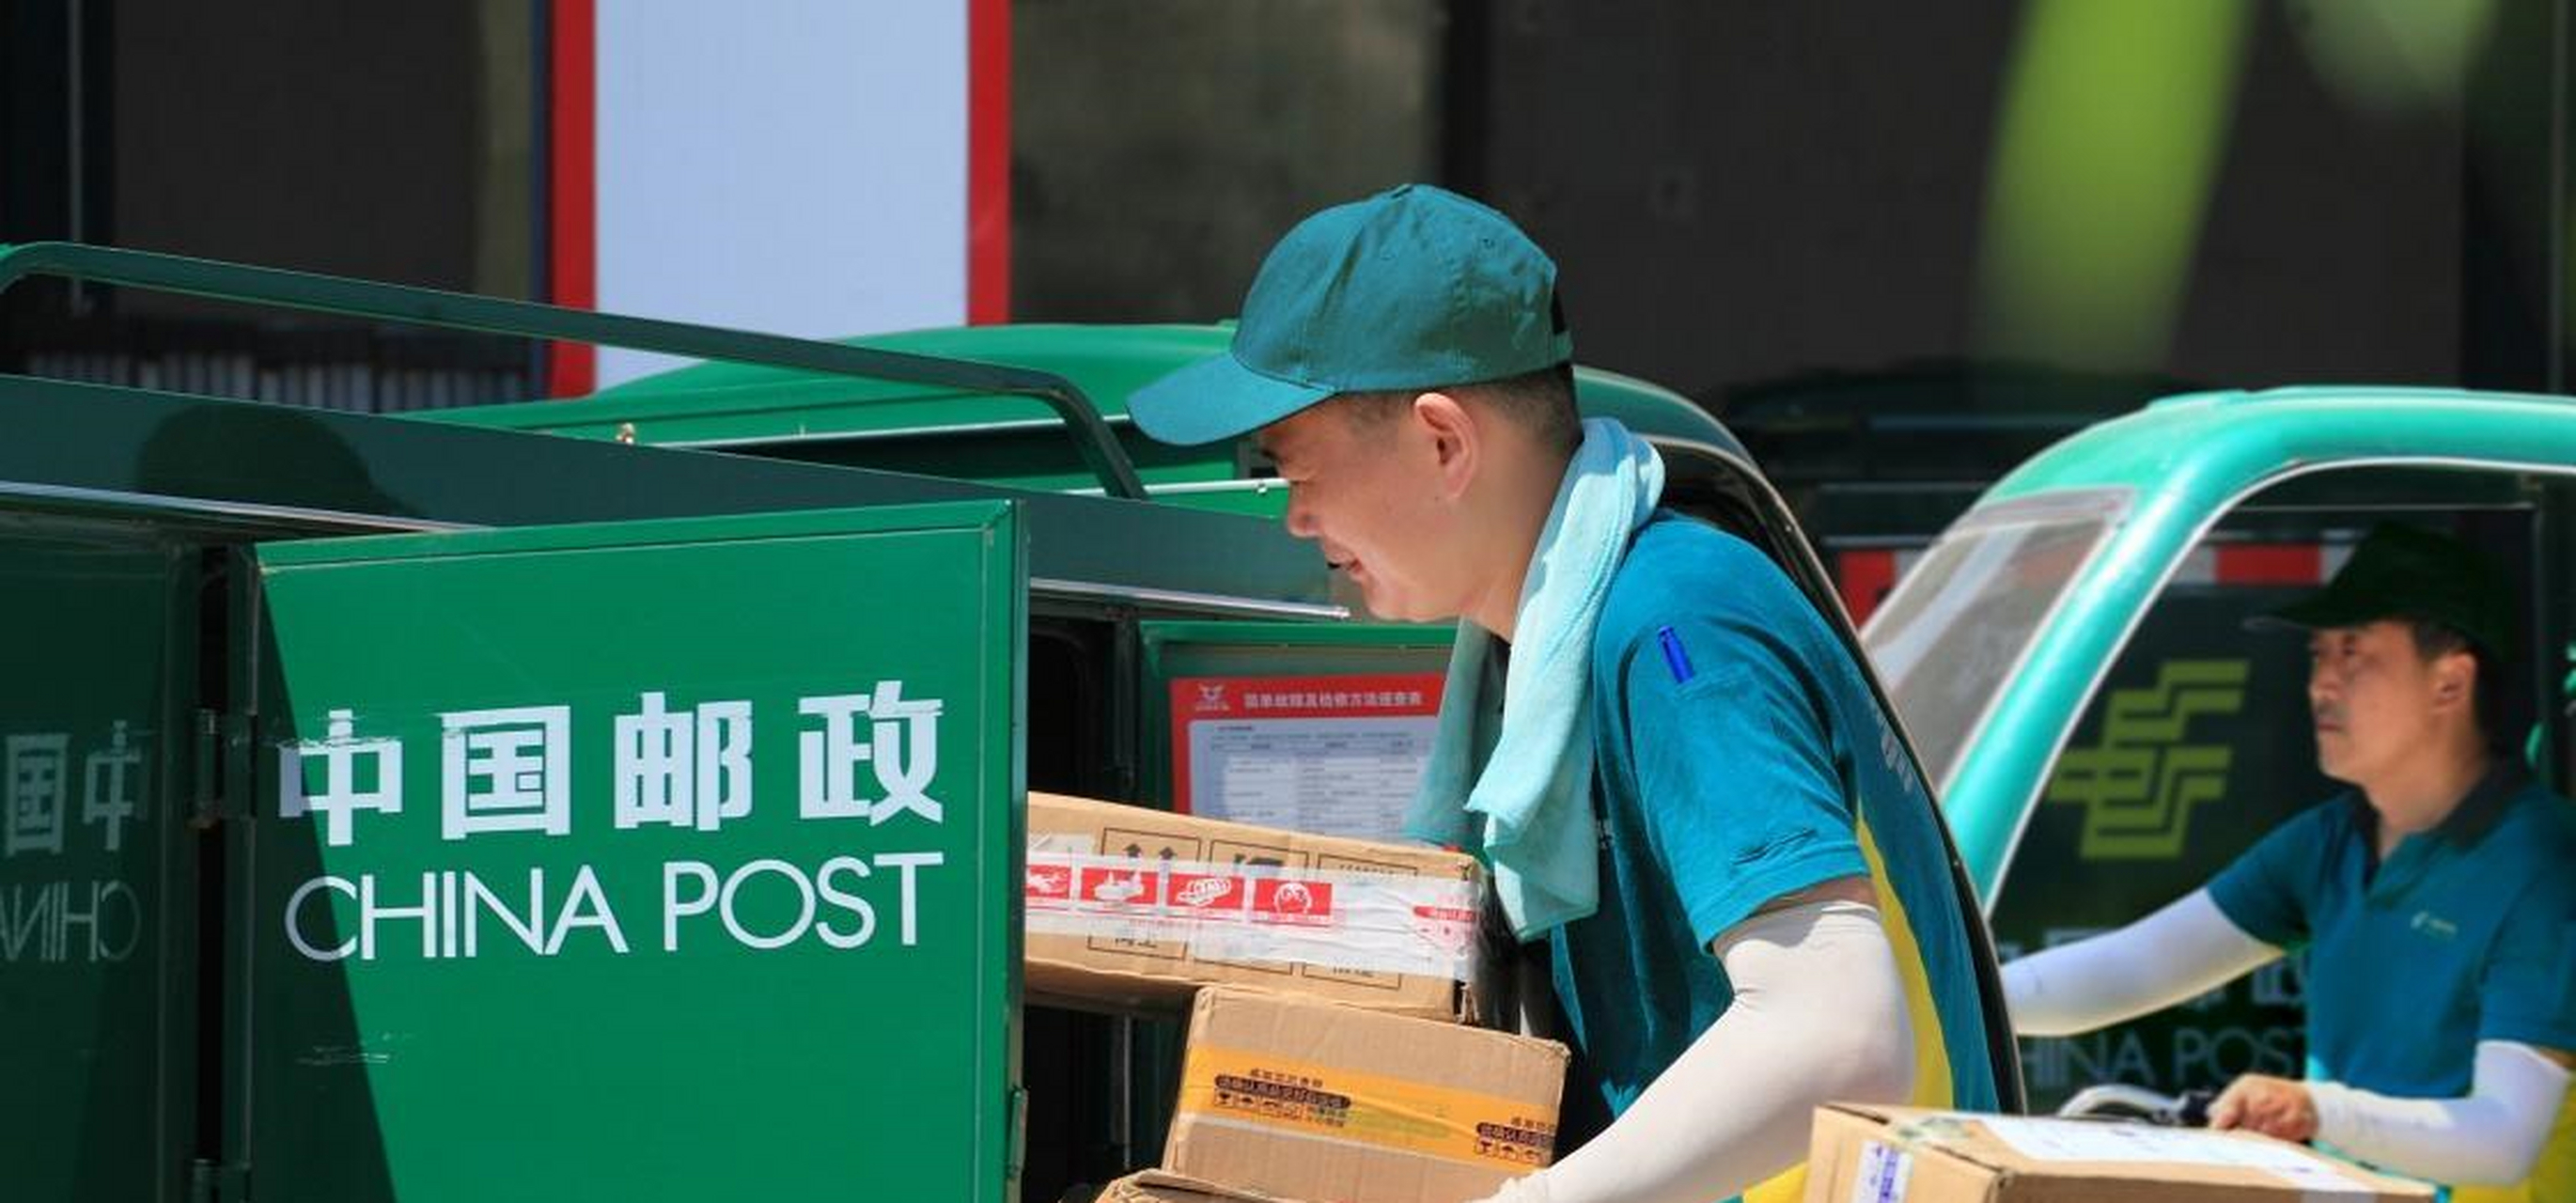 陕西男子邮寄毕业两证,却遇速递惊喜,网友:叫你不用邮政!